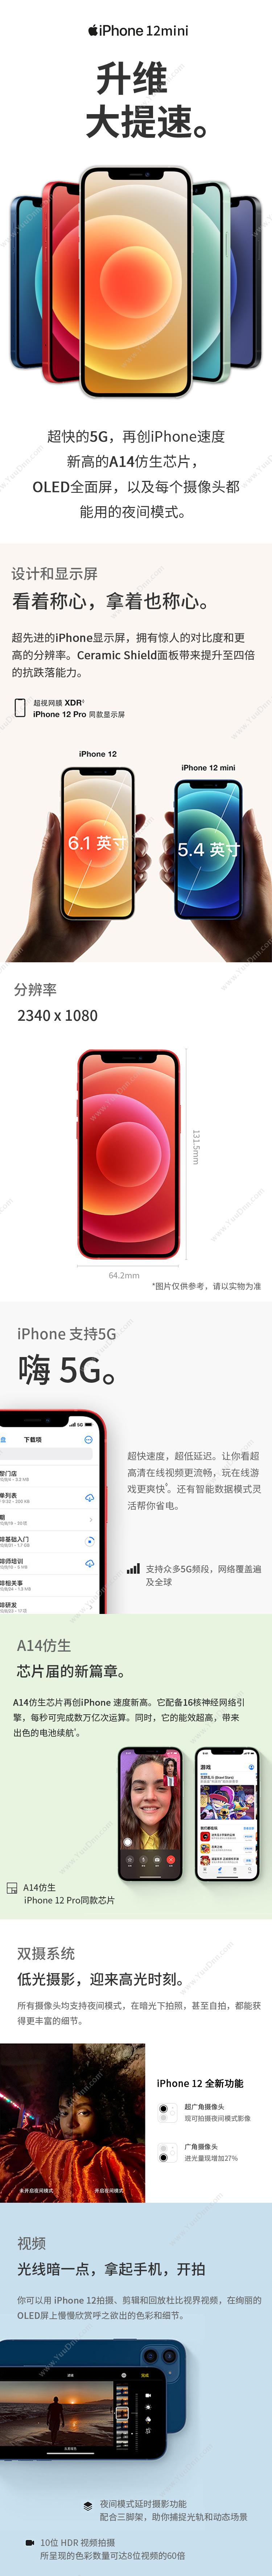 苹果 Apple iPhone 12Mini (MG8A3CH/A) 256G 白色 移动联通电信5G手机 手机